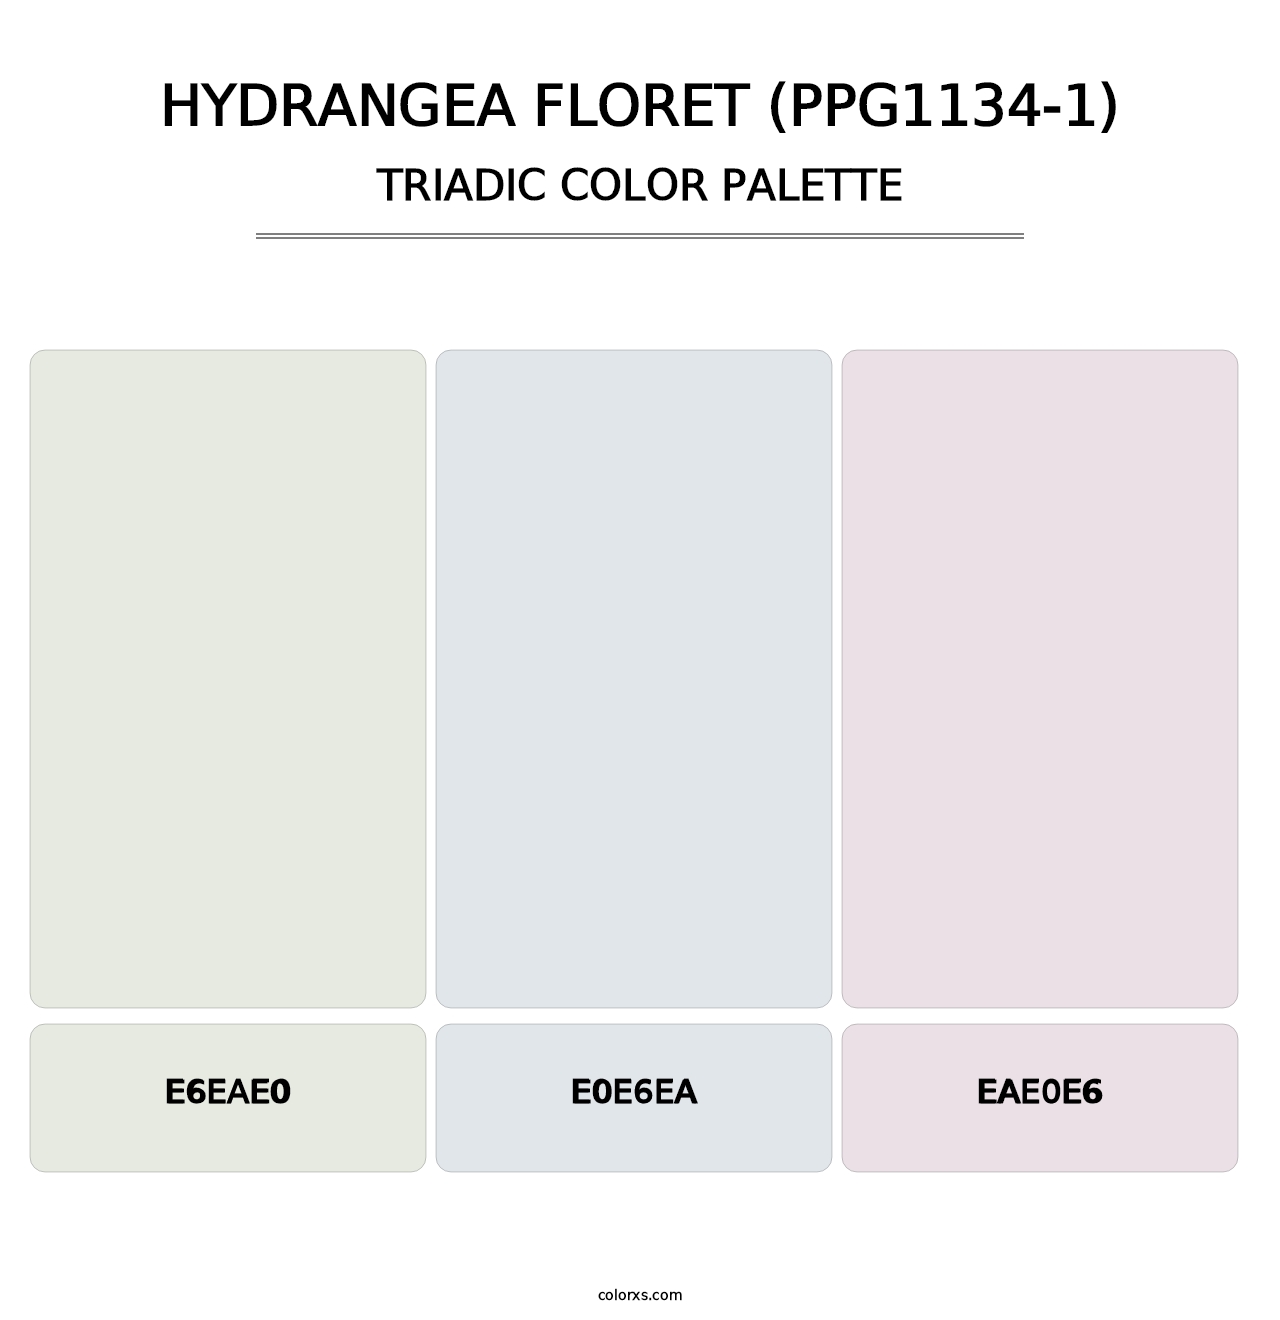 Hydrangea Floret (PPG1134-1) - Triadic Color Palette